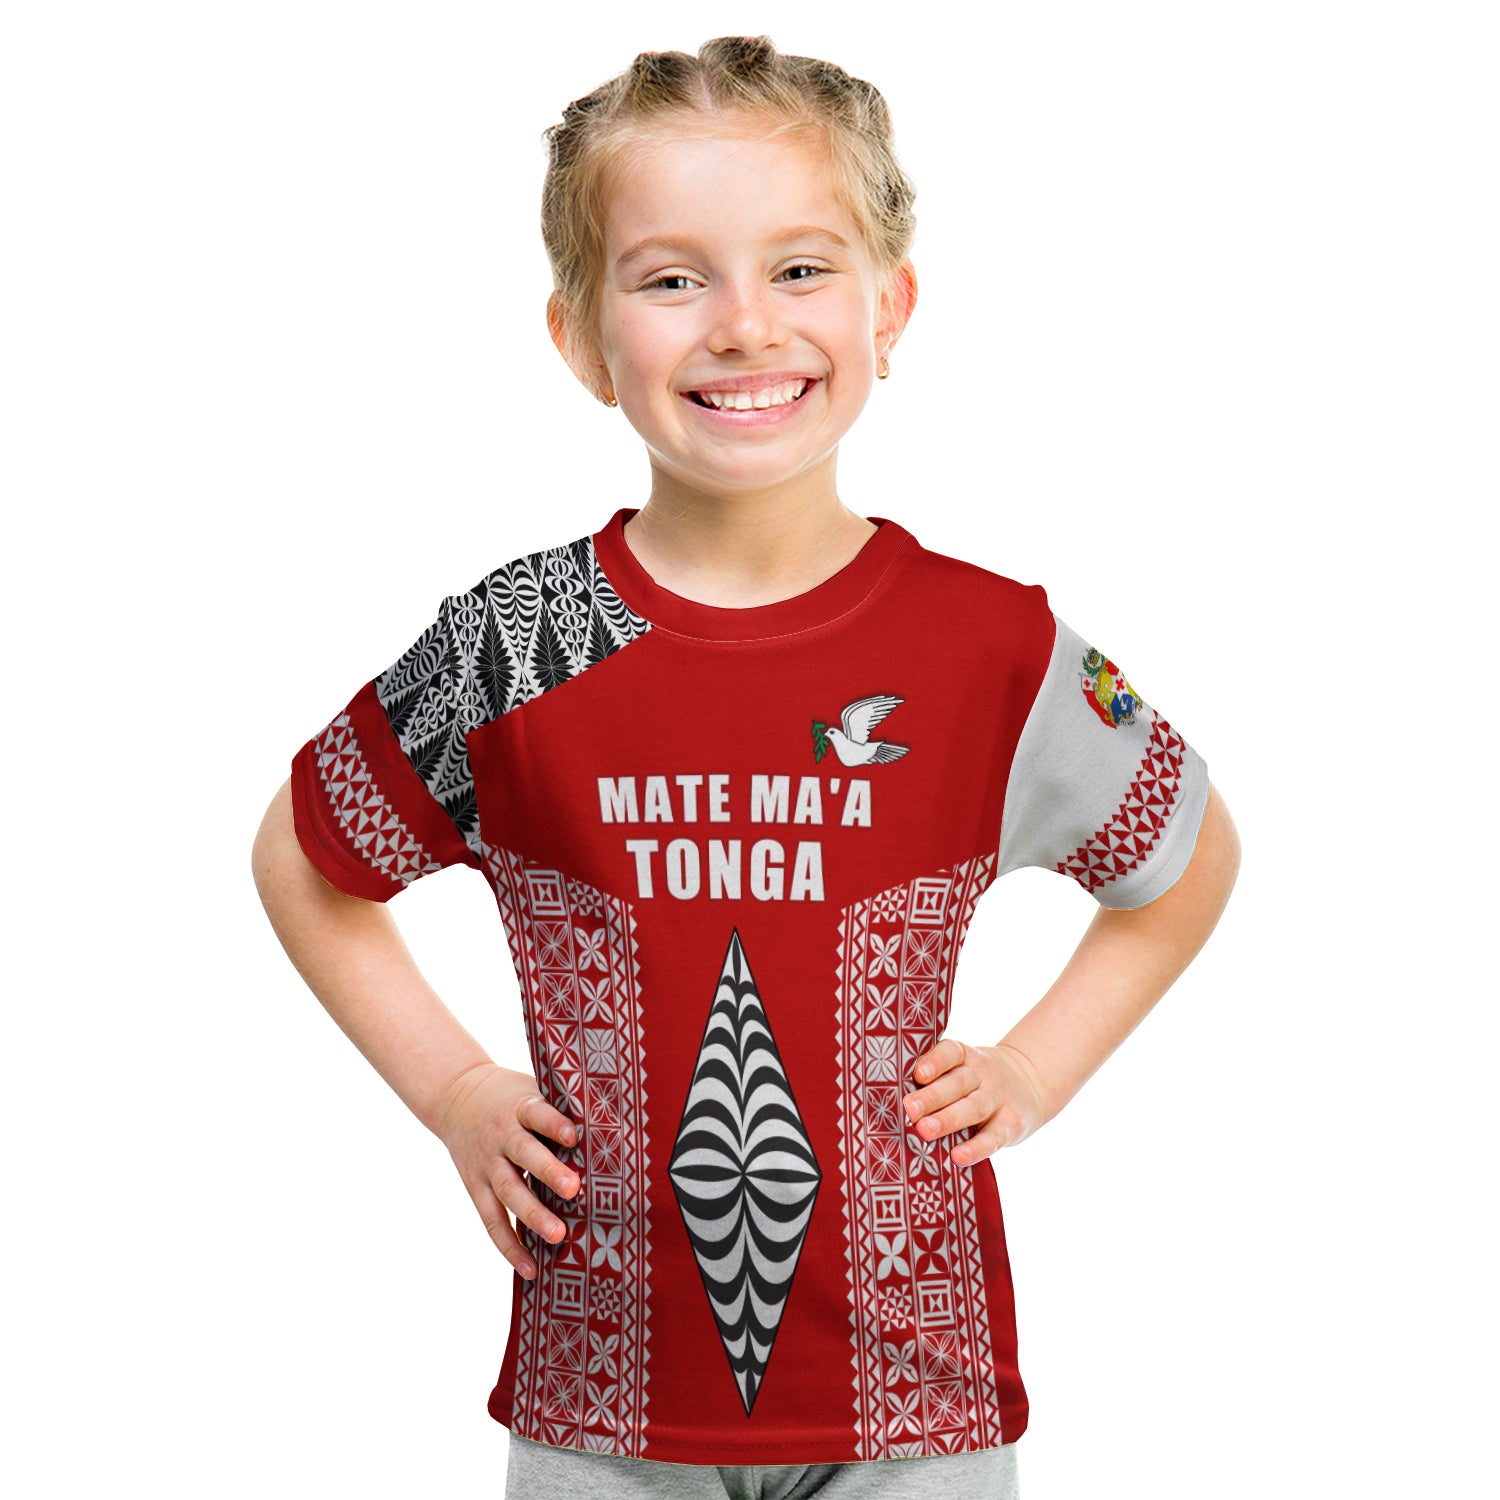 Tonga Rugby T Shirt Kid - Mate Ma'A Tonga LT13 - Polynesian Pride